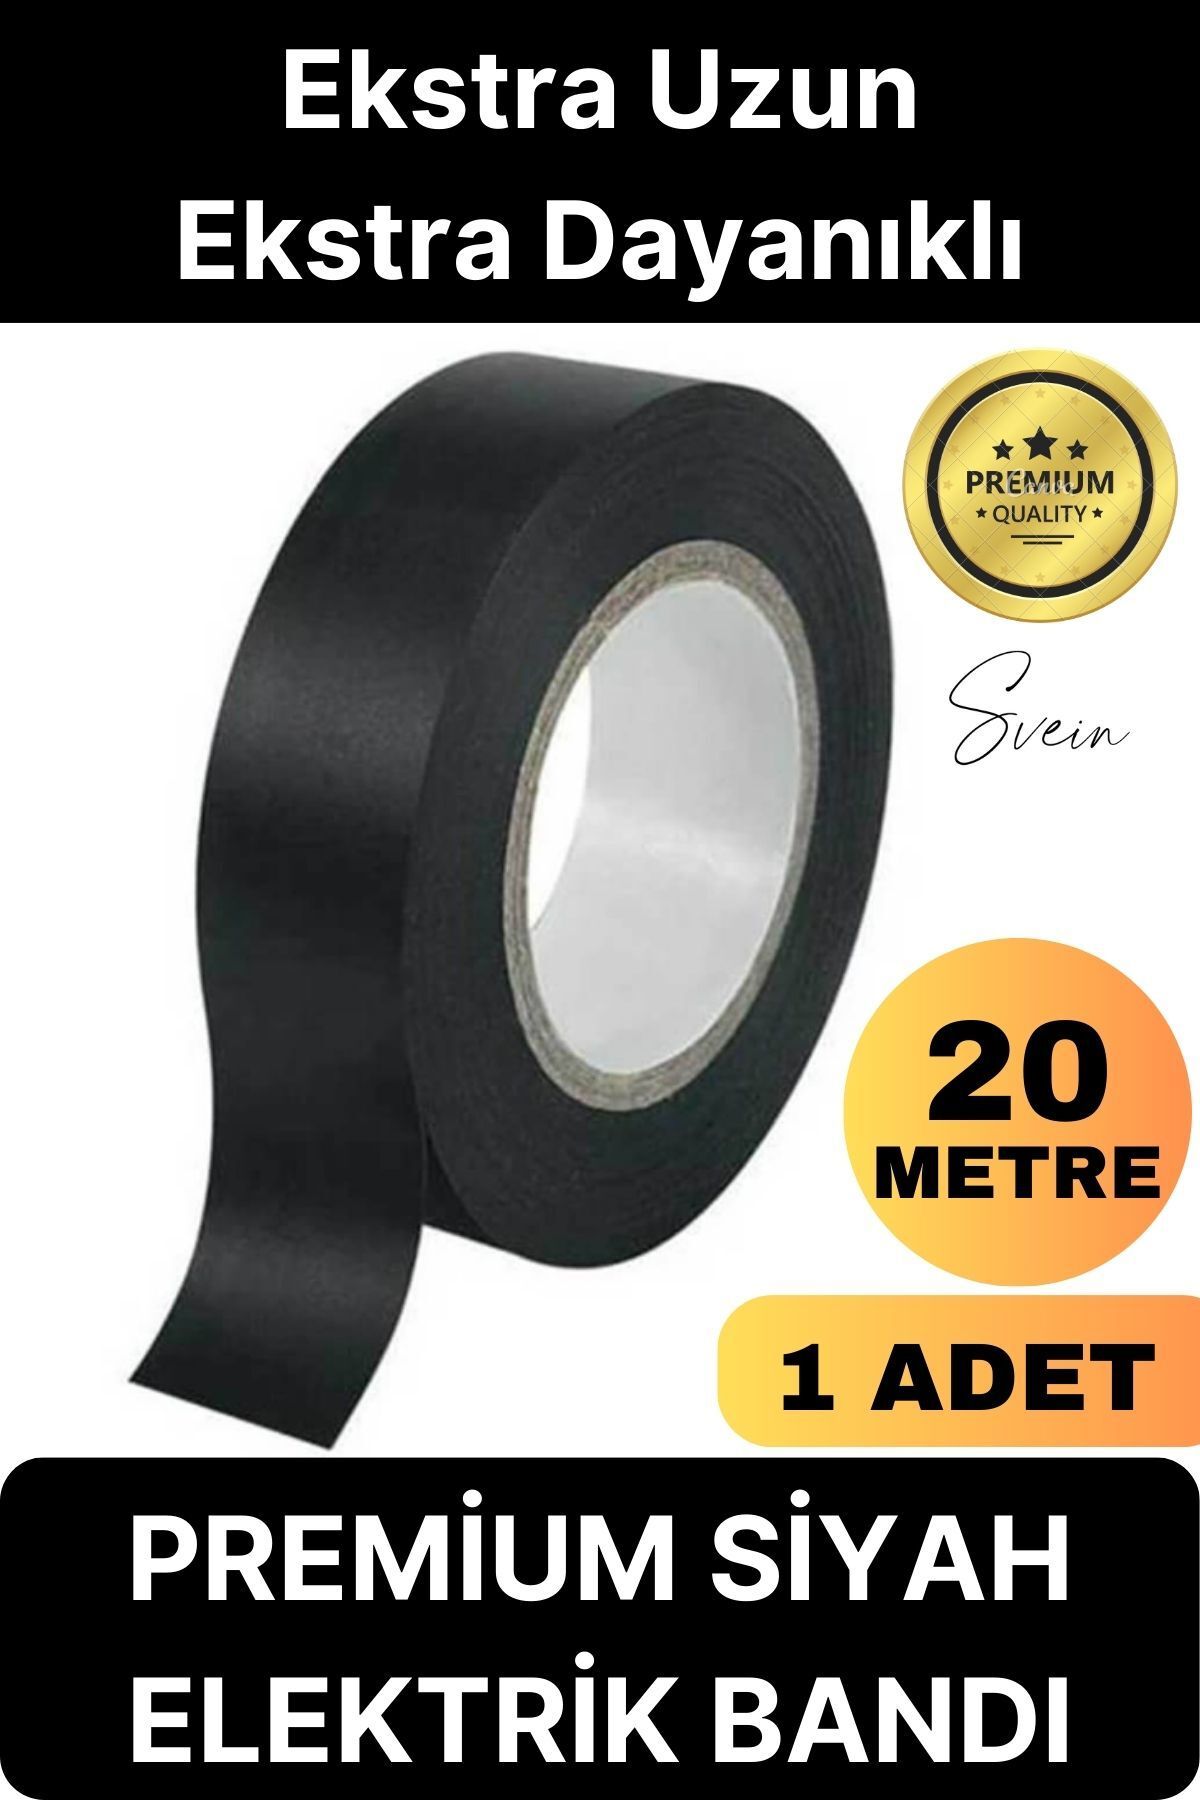 Svein 1 Ad. Premium Kalite 20 Mt Yalıtım İzole PVC Elektrik Bandı Su Geçirmez Sızdırmaz Koruma Bant Siyah